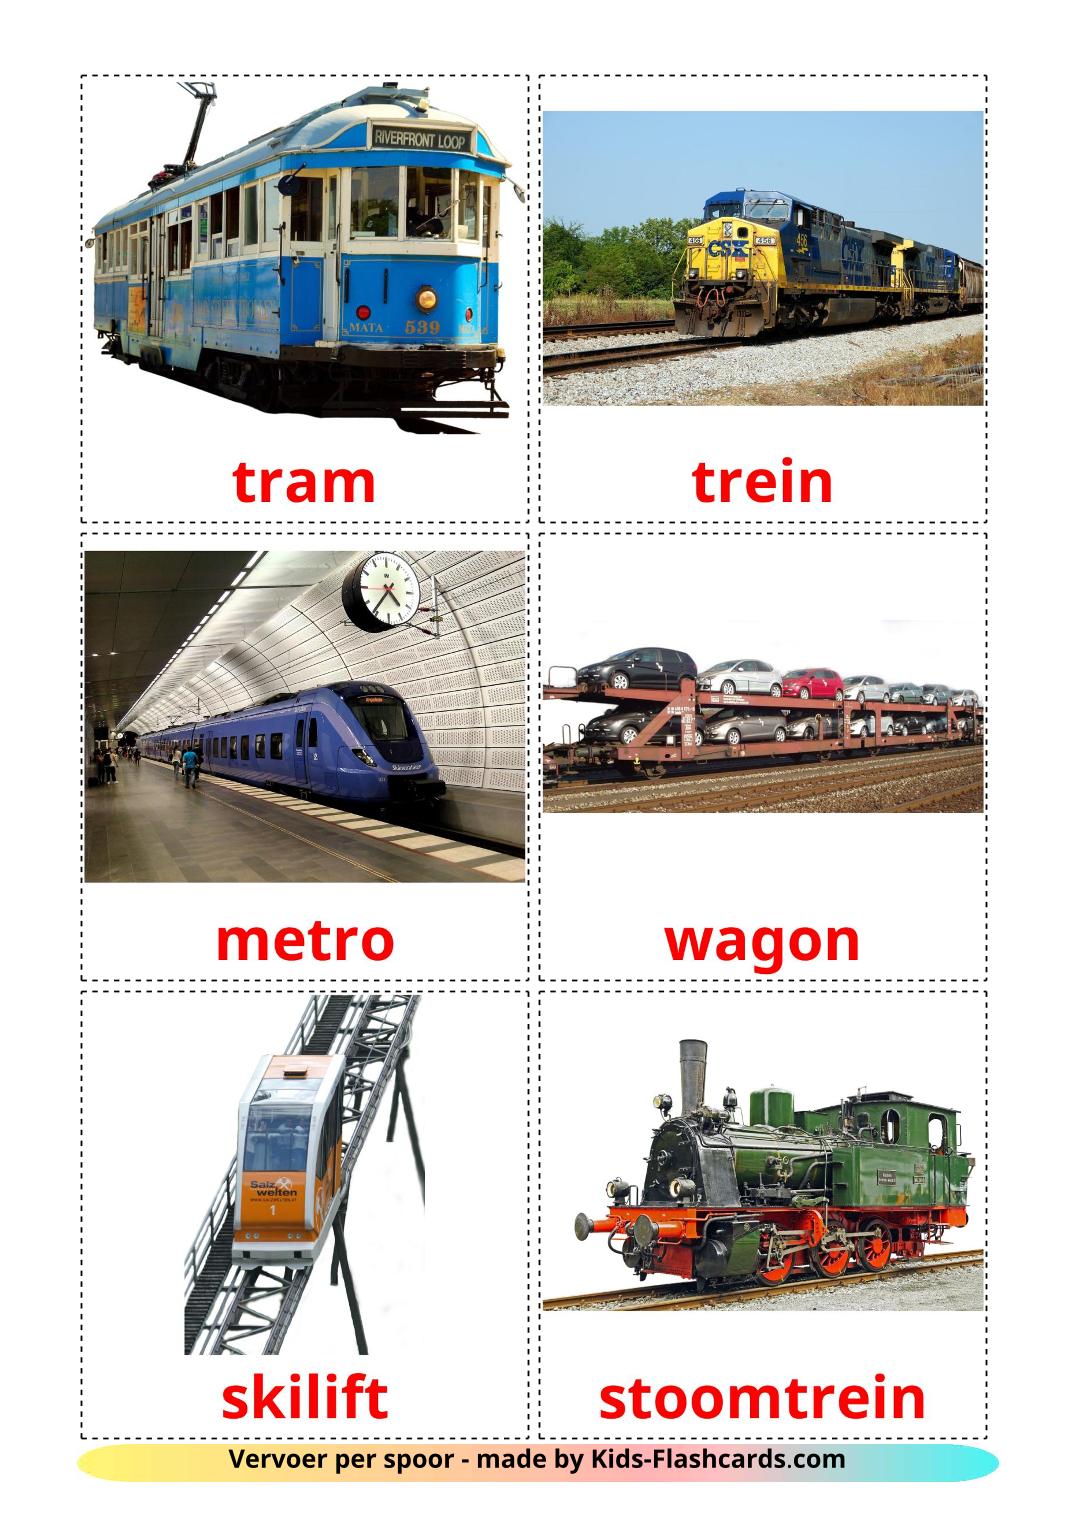 Transporte ferroviario - 18 fichas de holandés para imprimir gratis 